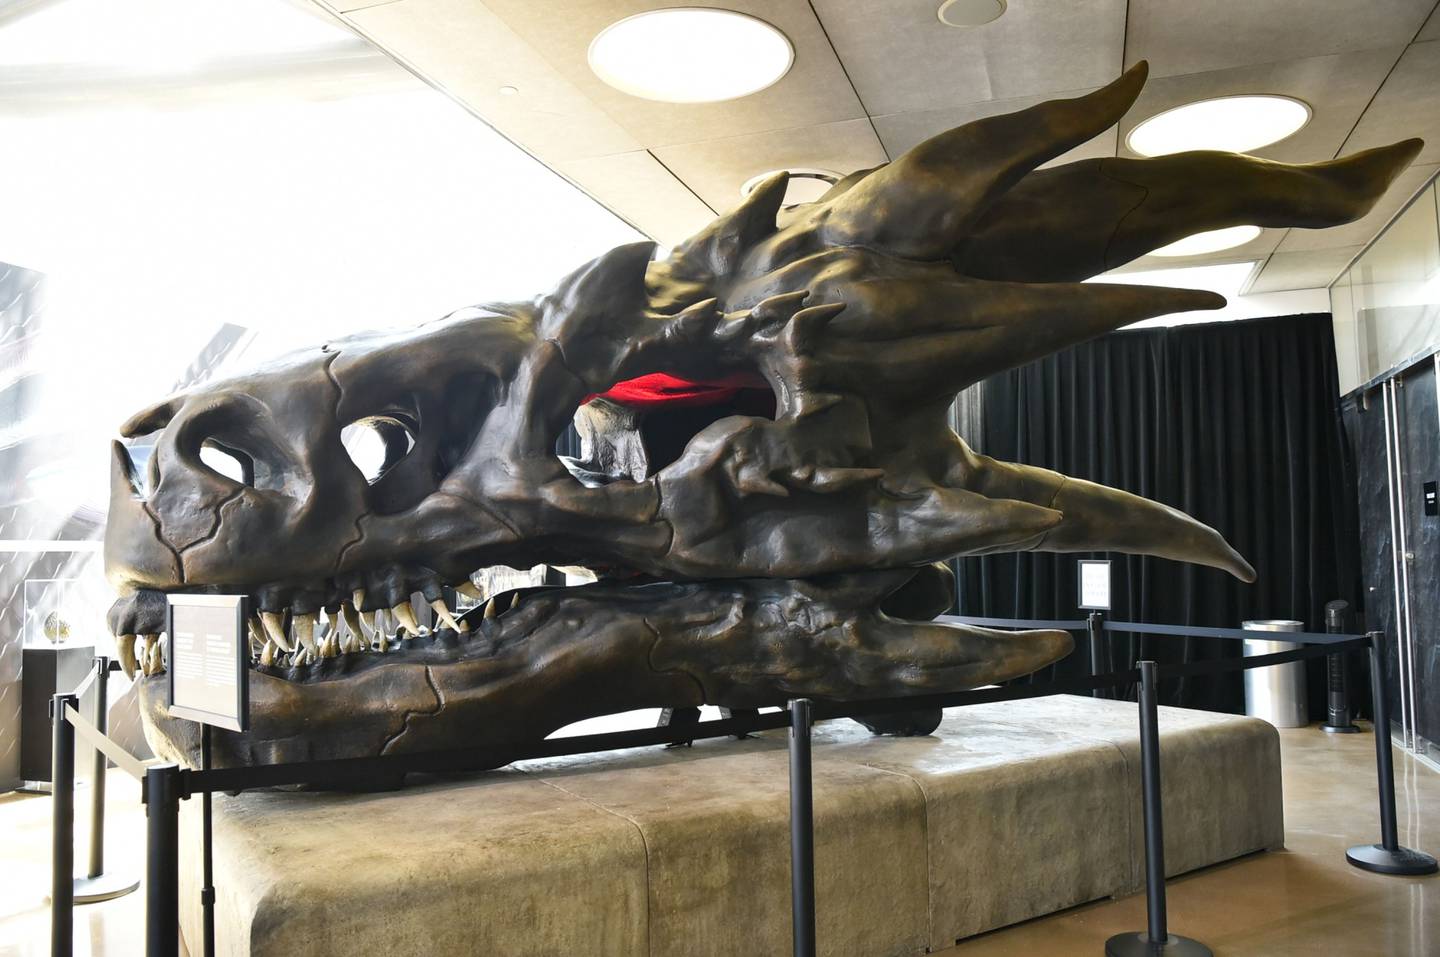 El cráneo de dragón de Balerion The Black Dread, perteneciente al universo de Game of Thrones, se aprecia en la exhibición en el Museo Nacional de Historia en Los Ángeles, California.dfd